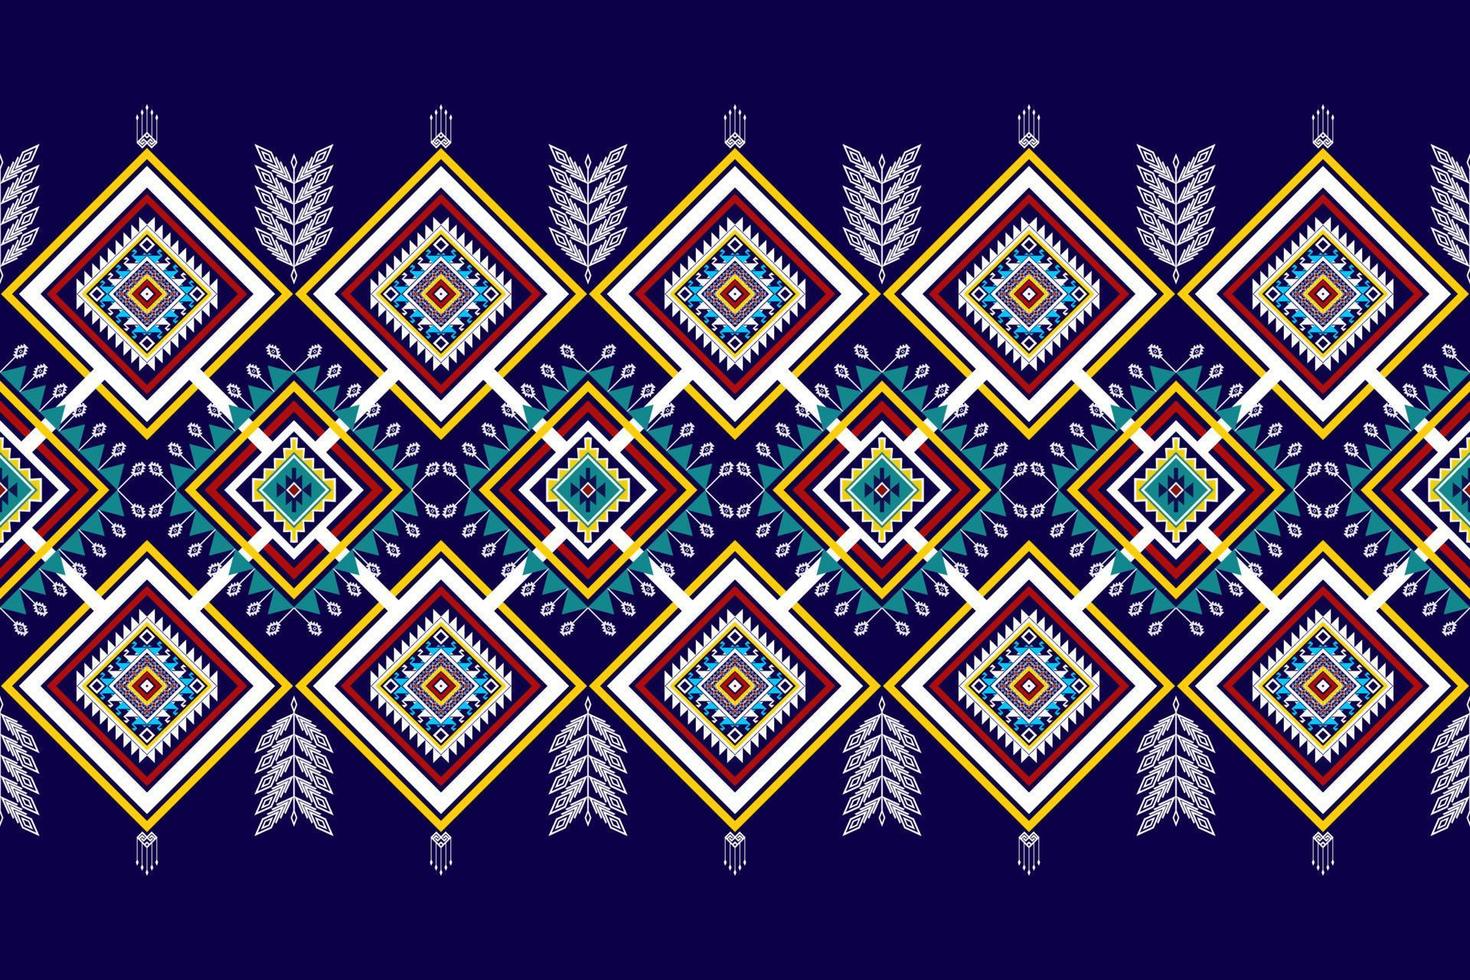 geometrisch abstract etnisch naadloos patroonontwerp. Azteekse stof tapijt mandala ornamenten textiel decoraties behang. tribal boho native motief turkije traditionele borduurwerk vector background